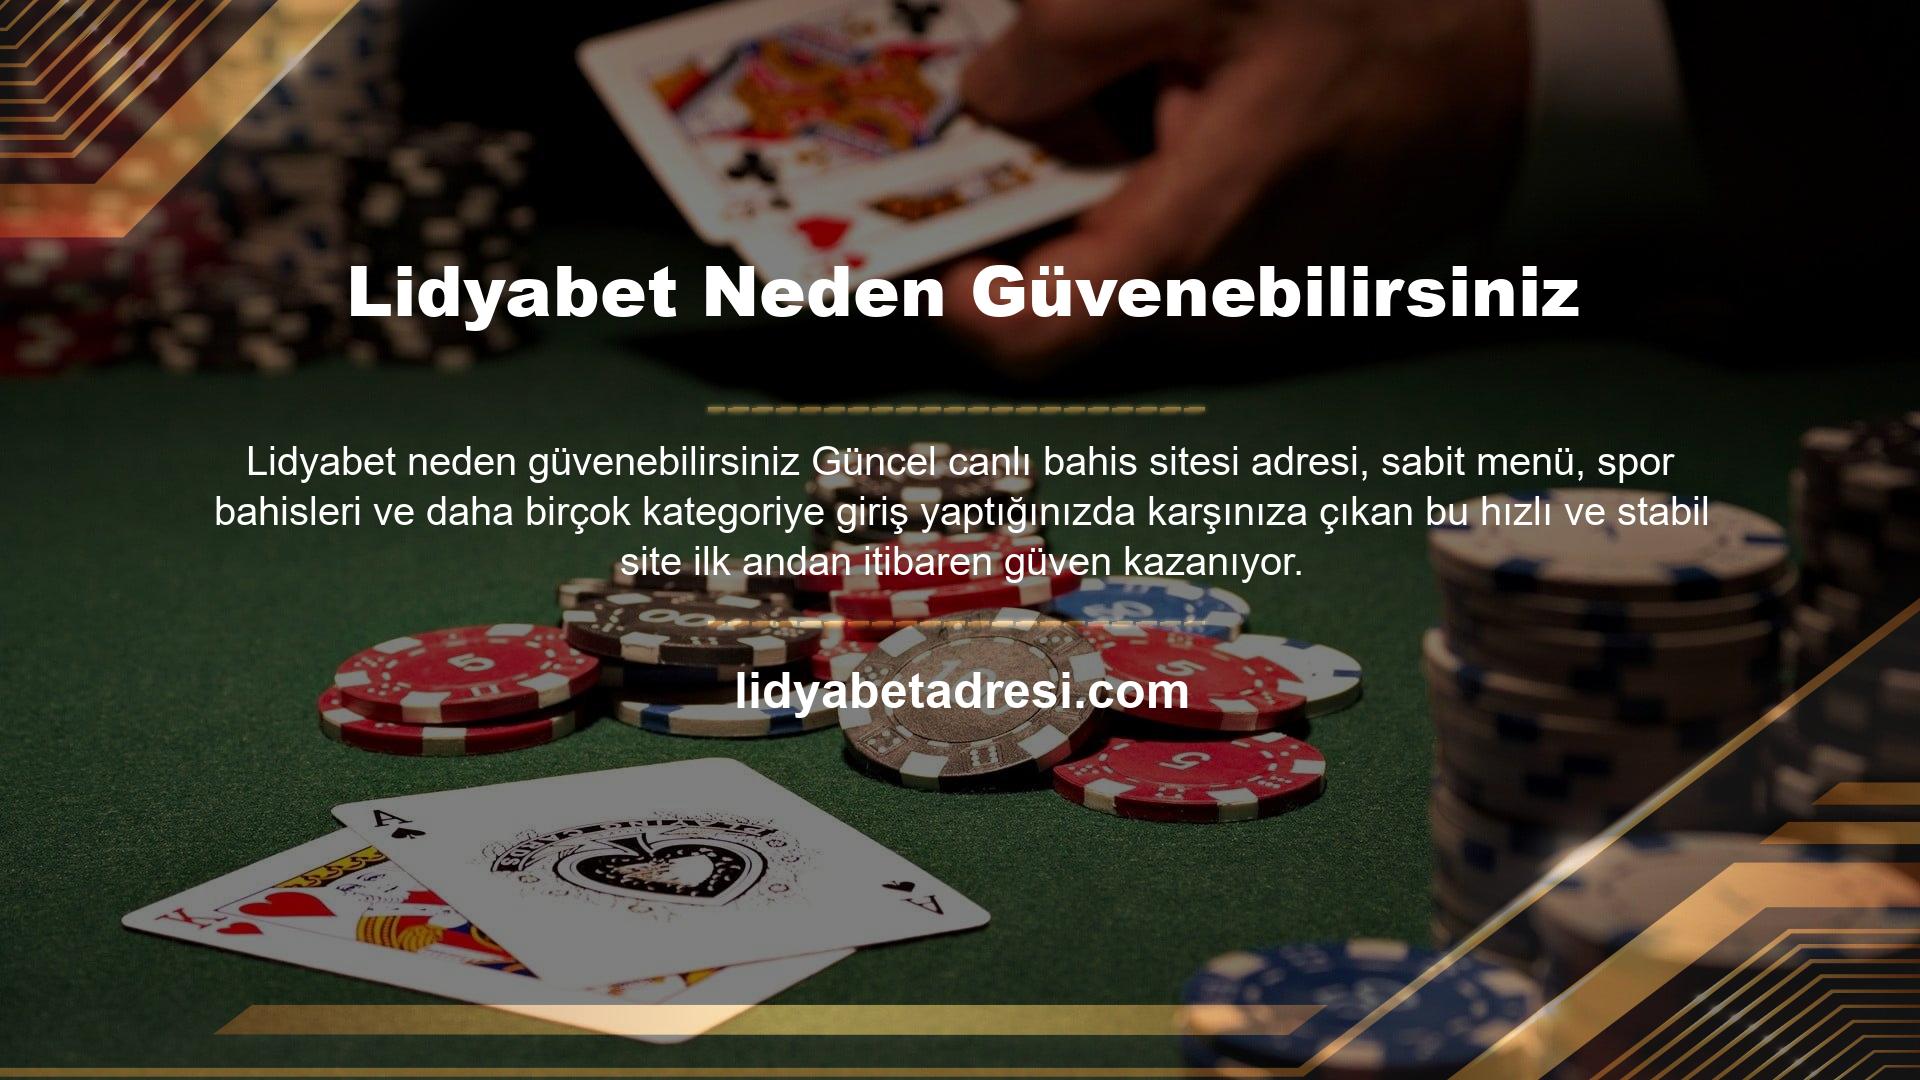 Lidyabet casino siteleri güvenilirlikleri ile ön plana çıkan oyun siteleridir